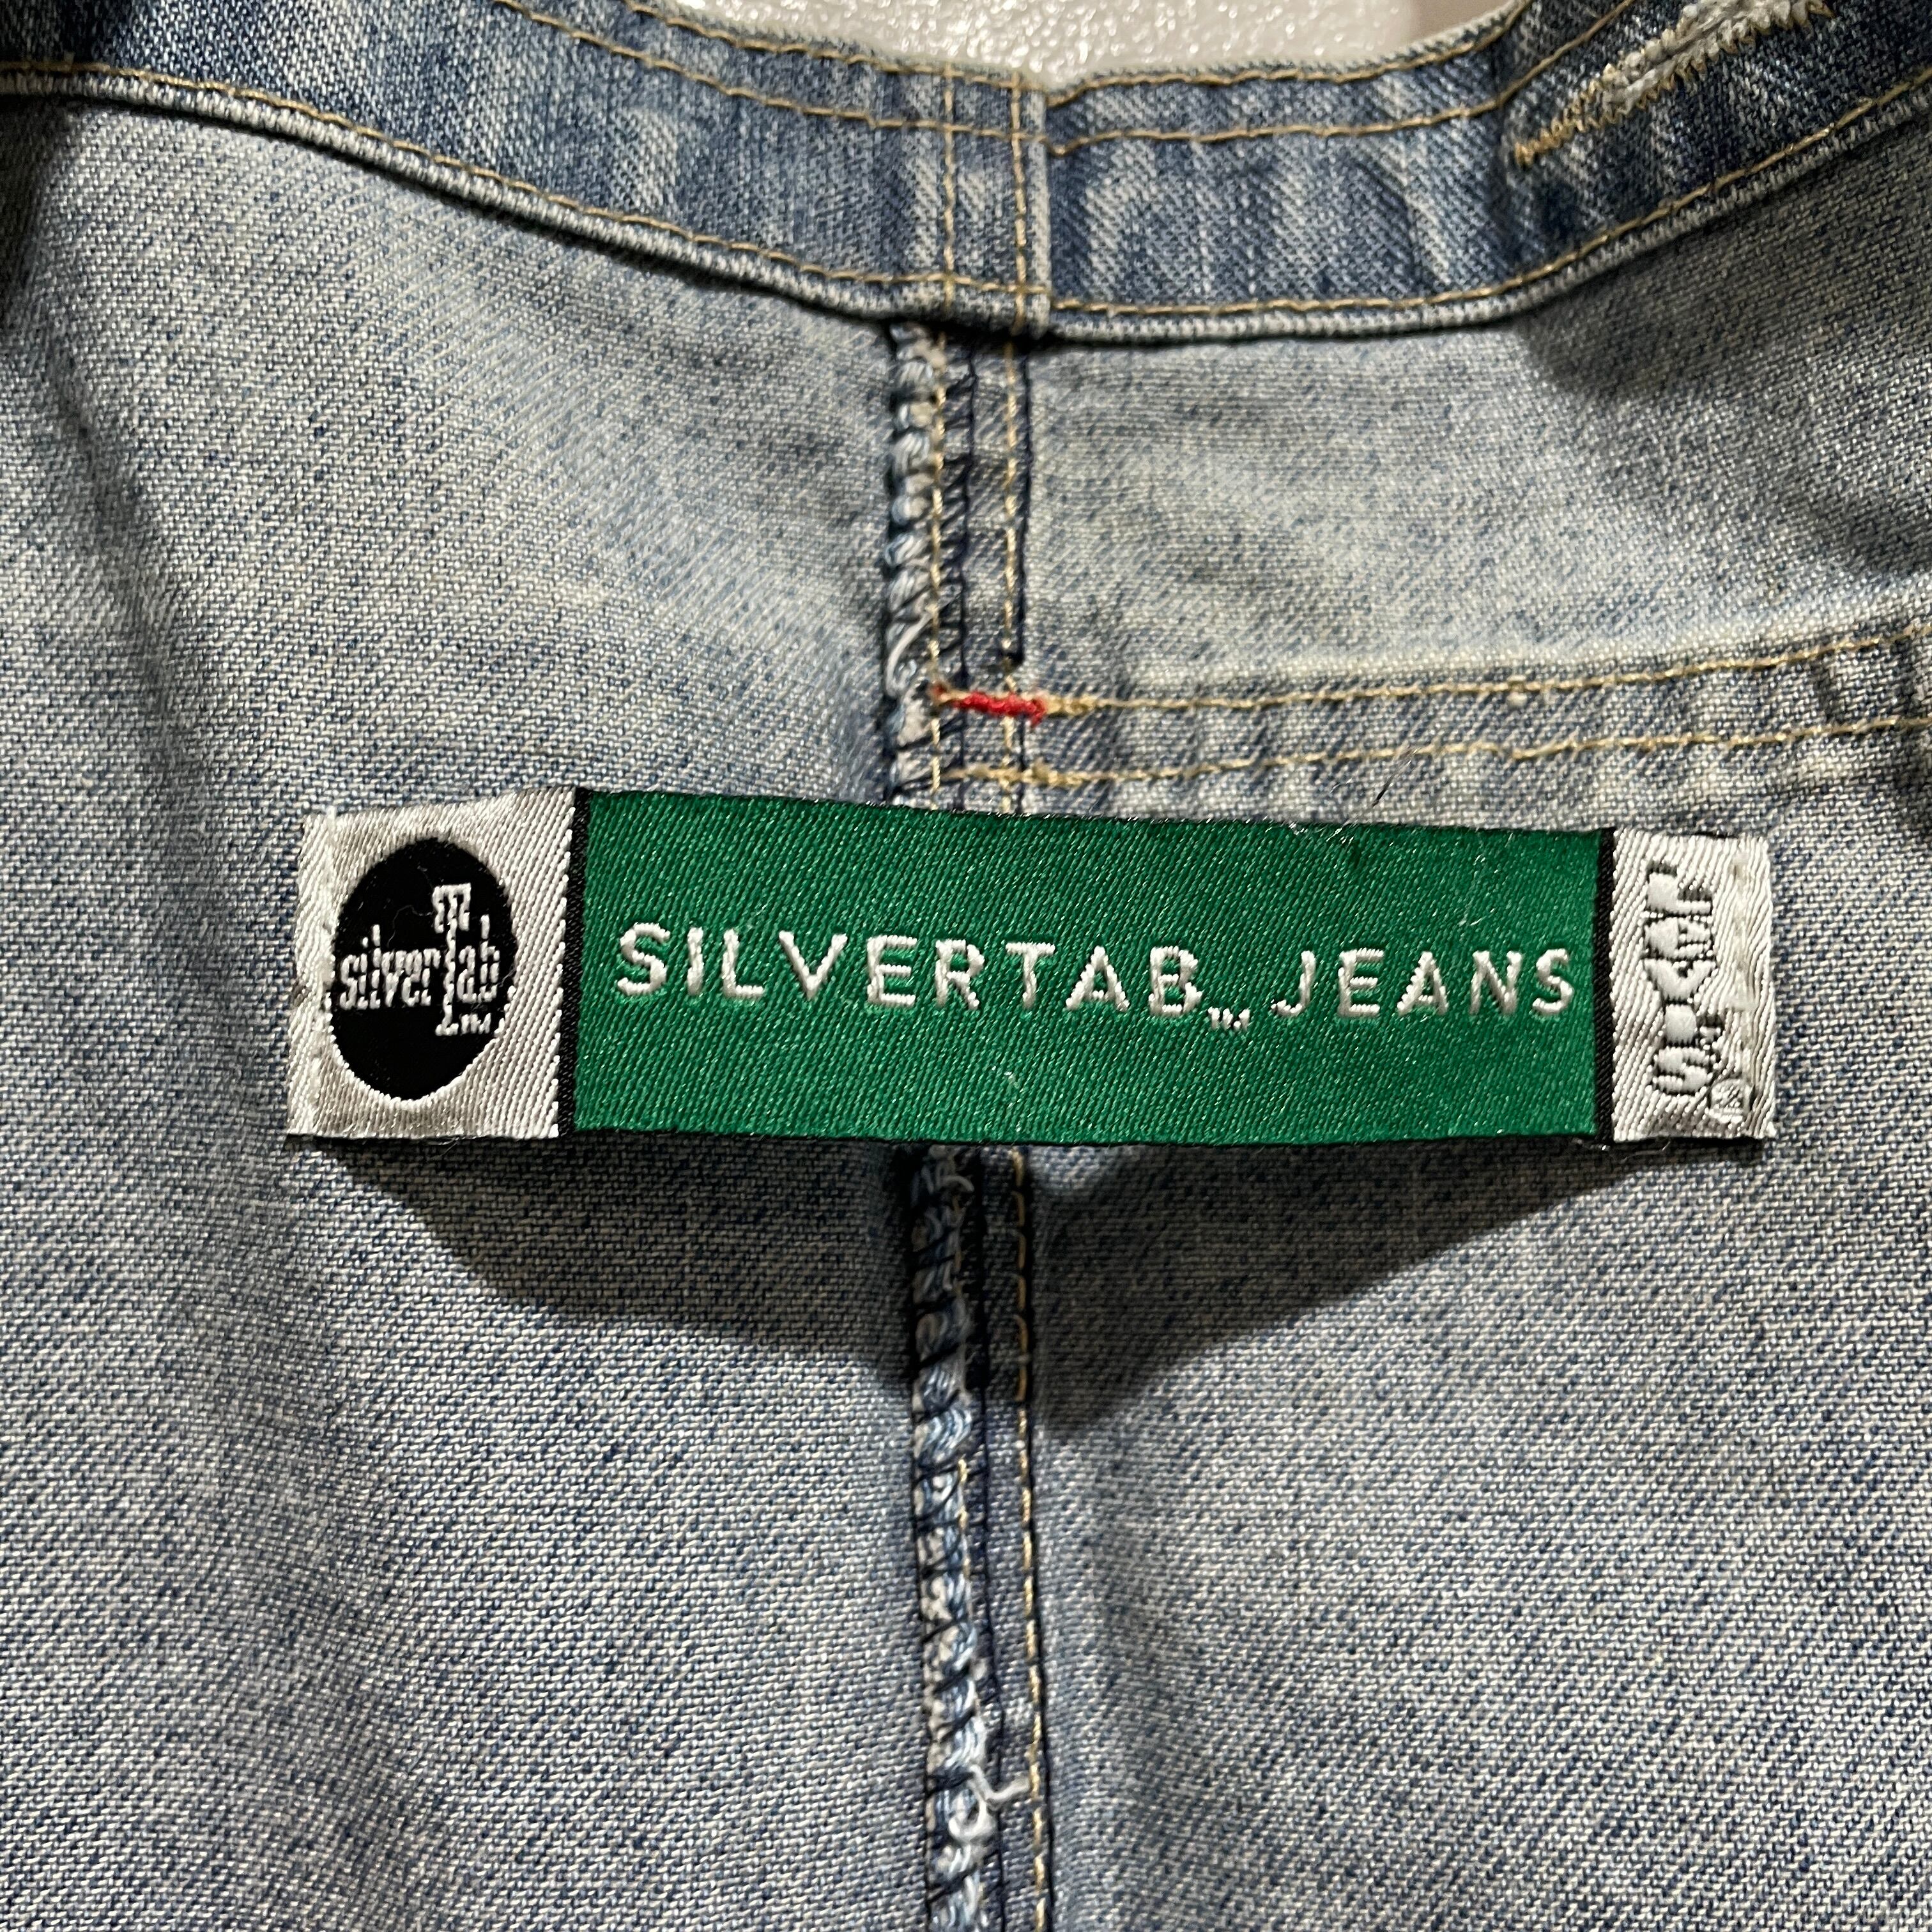 送料無料』Levi's シルバータブ デニムオーバーオール 90s silvertab